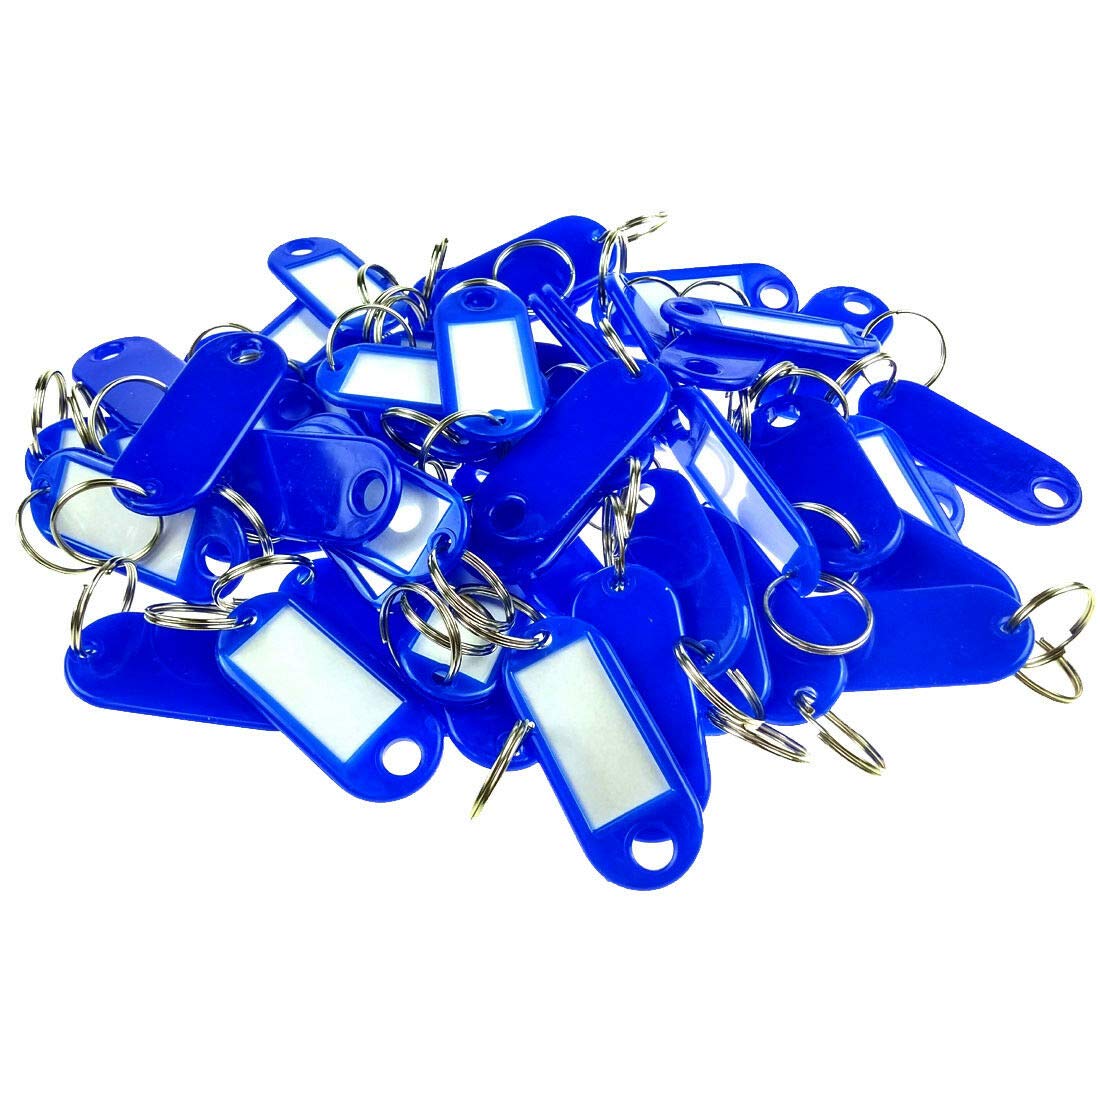 Wisplast 200 Stück Schlüsselschilder Schlüsselanhänger zum Beschriften in Blau